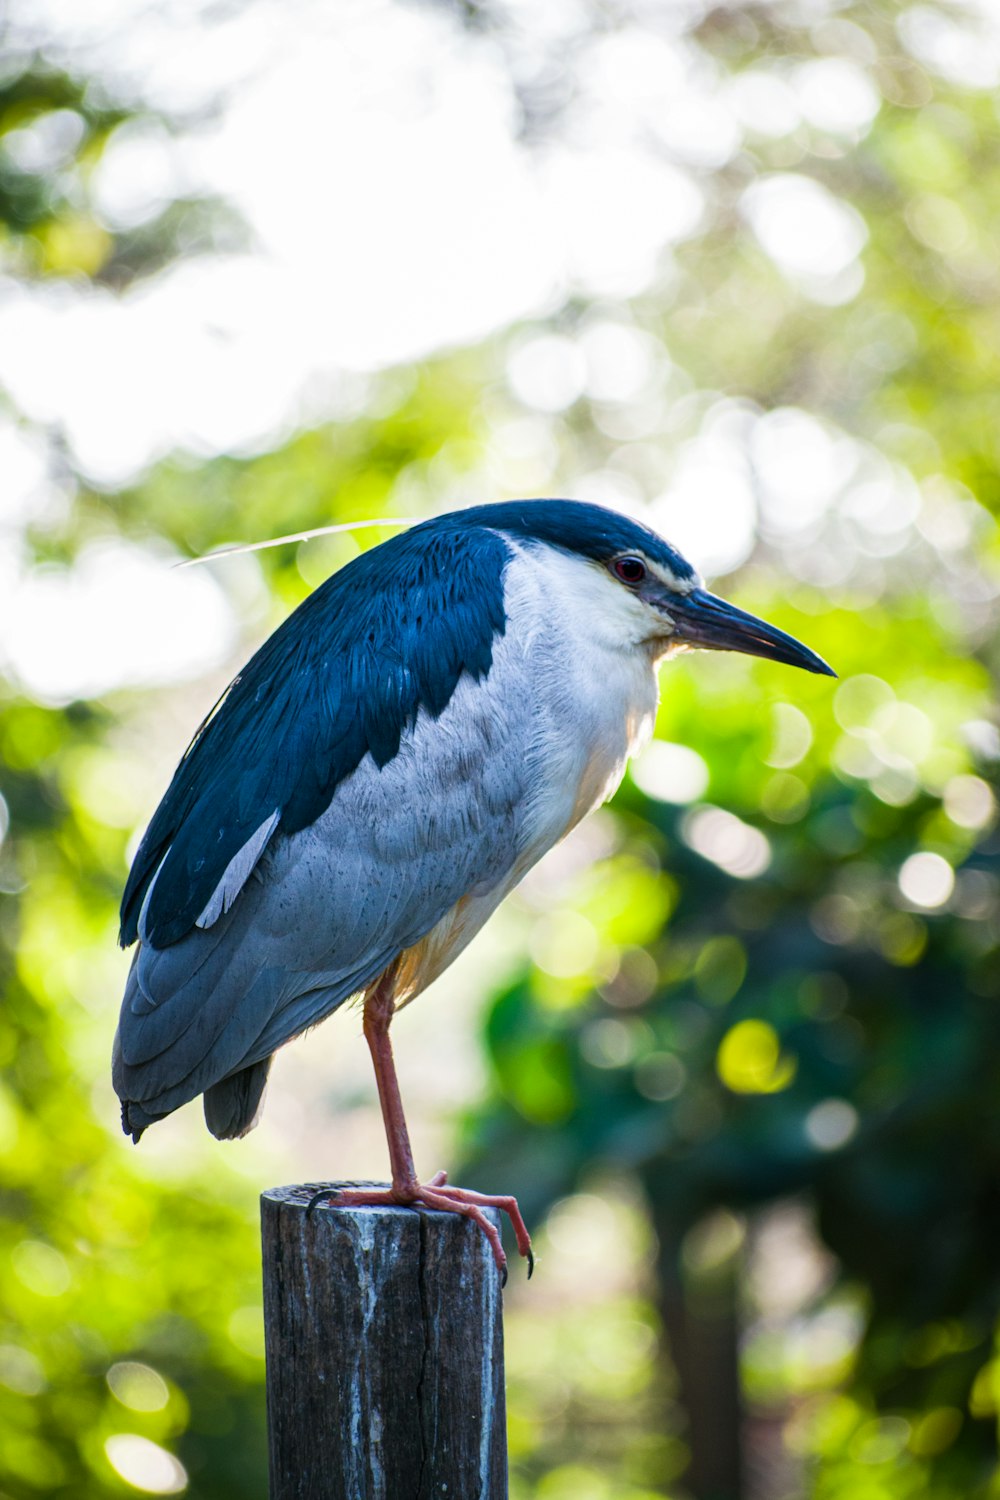 나무 기둥 위에 앉아 있는 파란색과 흰색 새